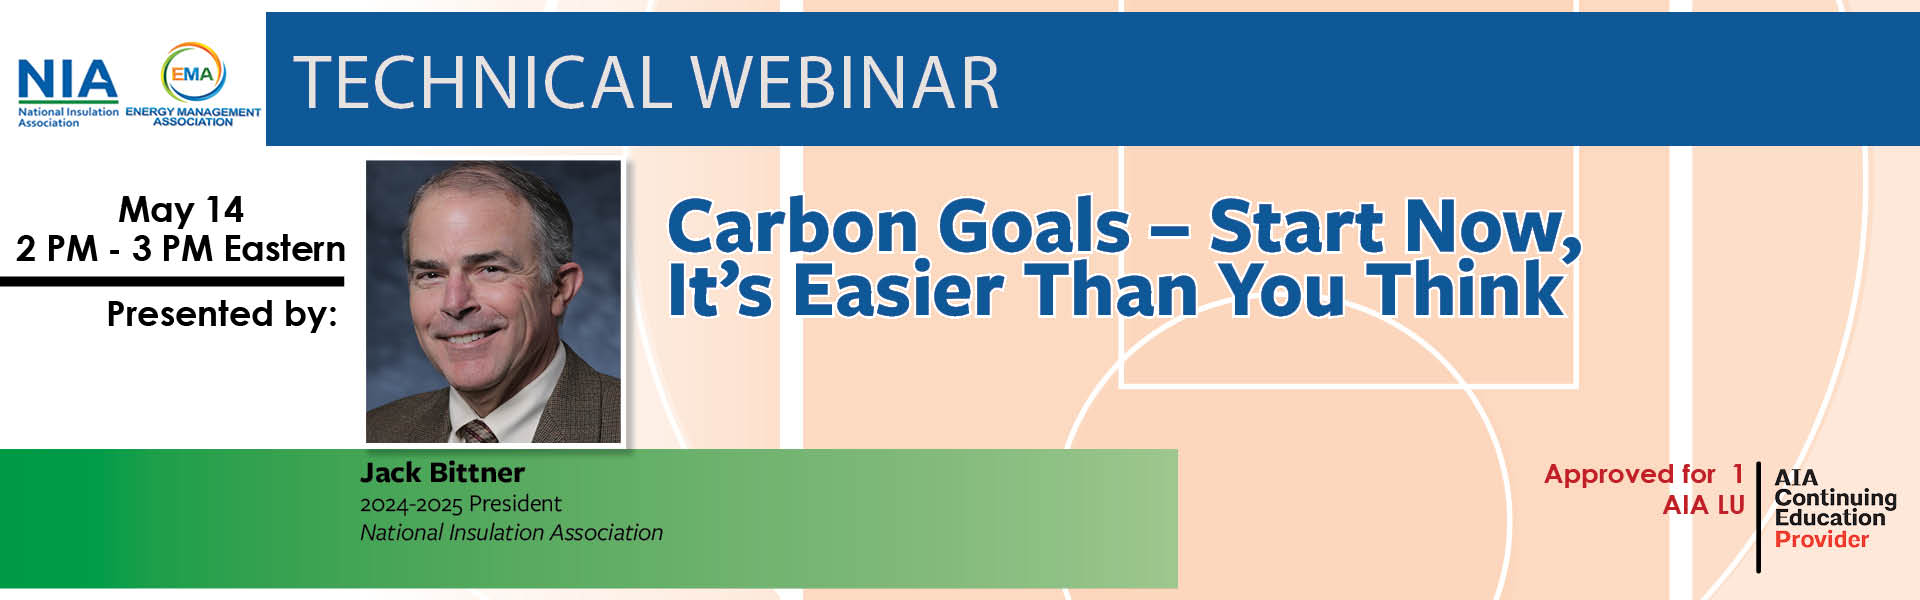 Carbon goals, energy management association